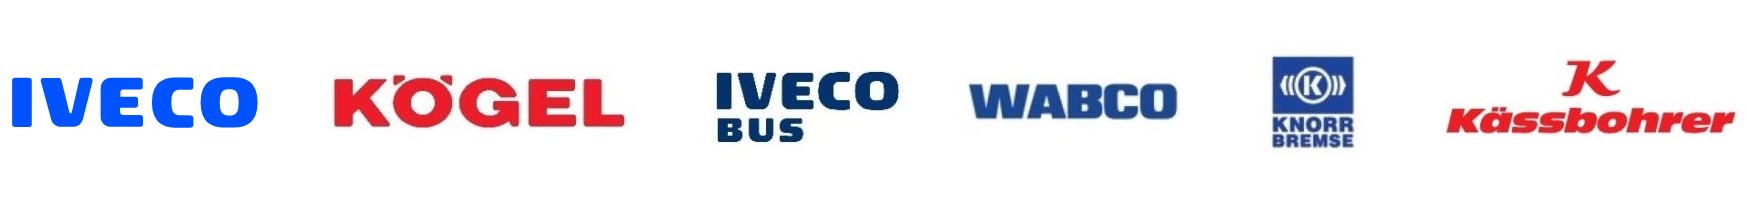 Serwis i części IVECO Poznań, serwis gwarancyjny i pogwarancyjny, likwidacja szkód, kalibracja i serwis tachografów, sprzedaż Ad Blue, OSKP.